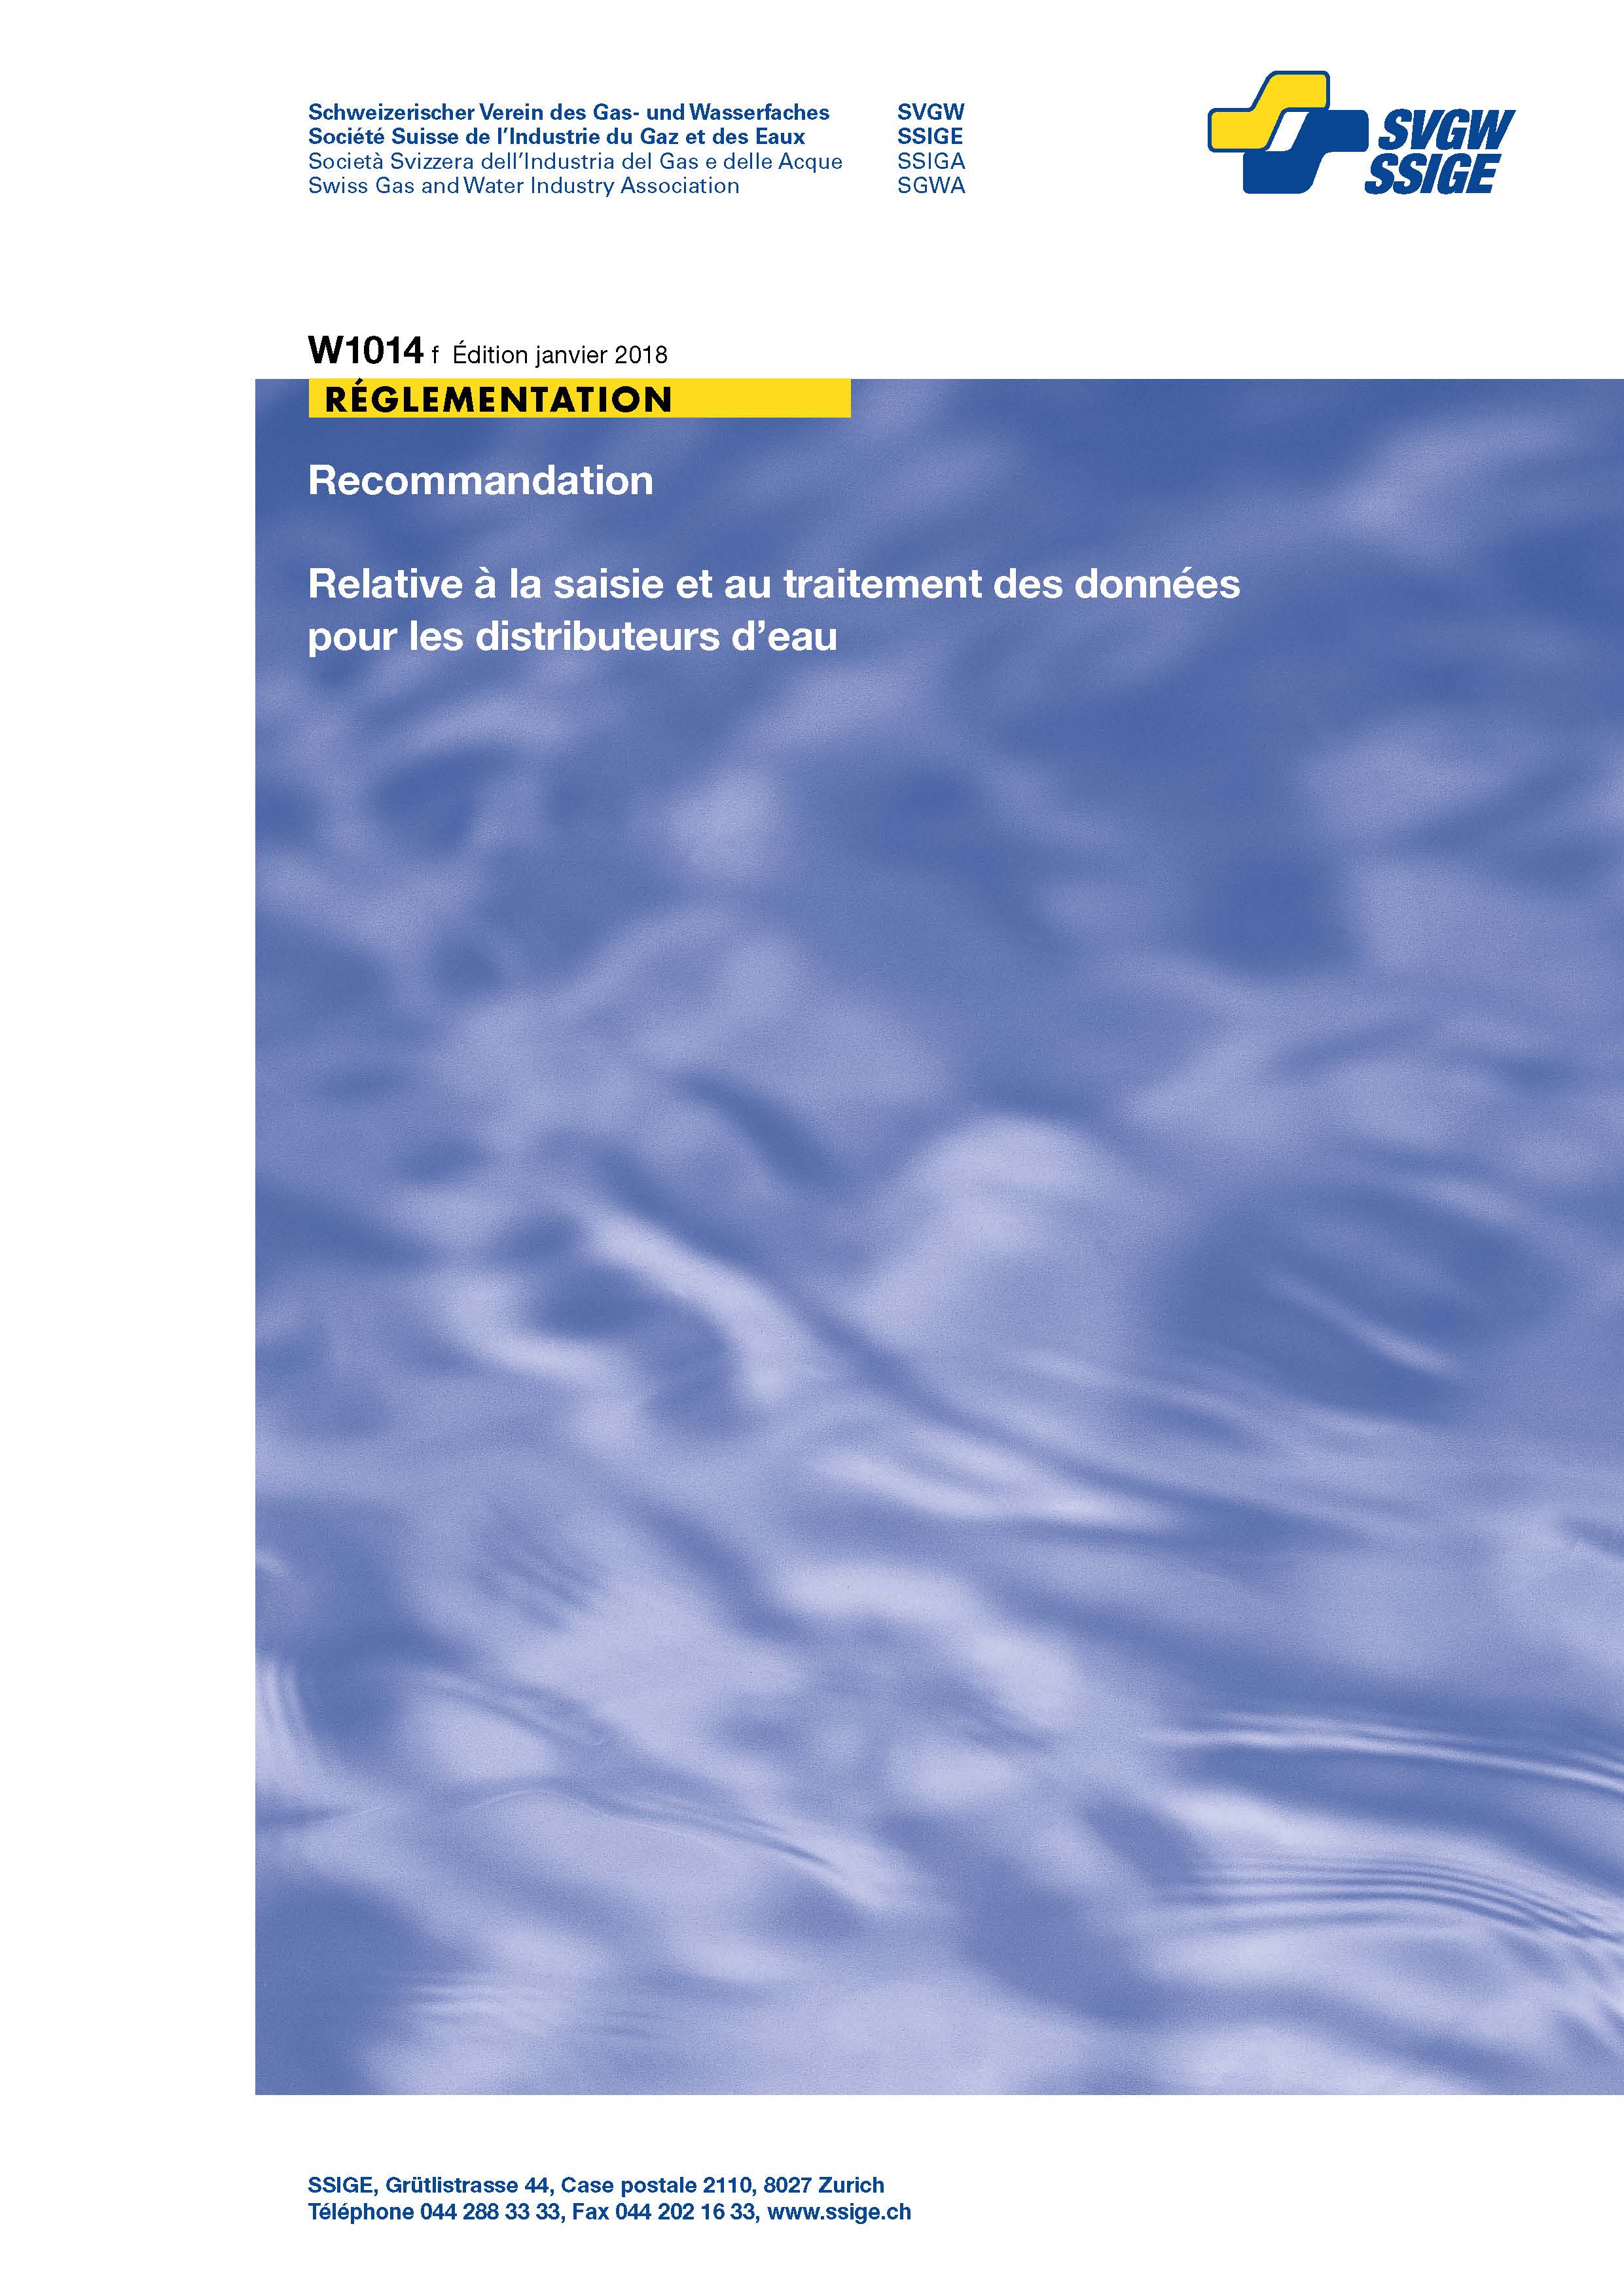 W1014 f Recommandation; Relative à la saisie et au traitement des données pour les distributeurs d'eau